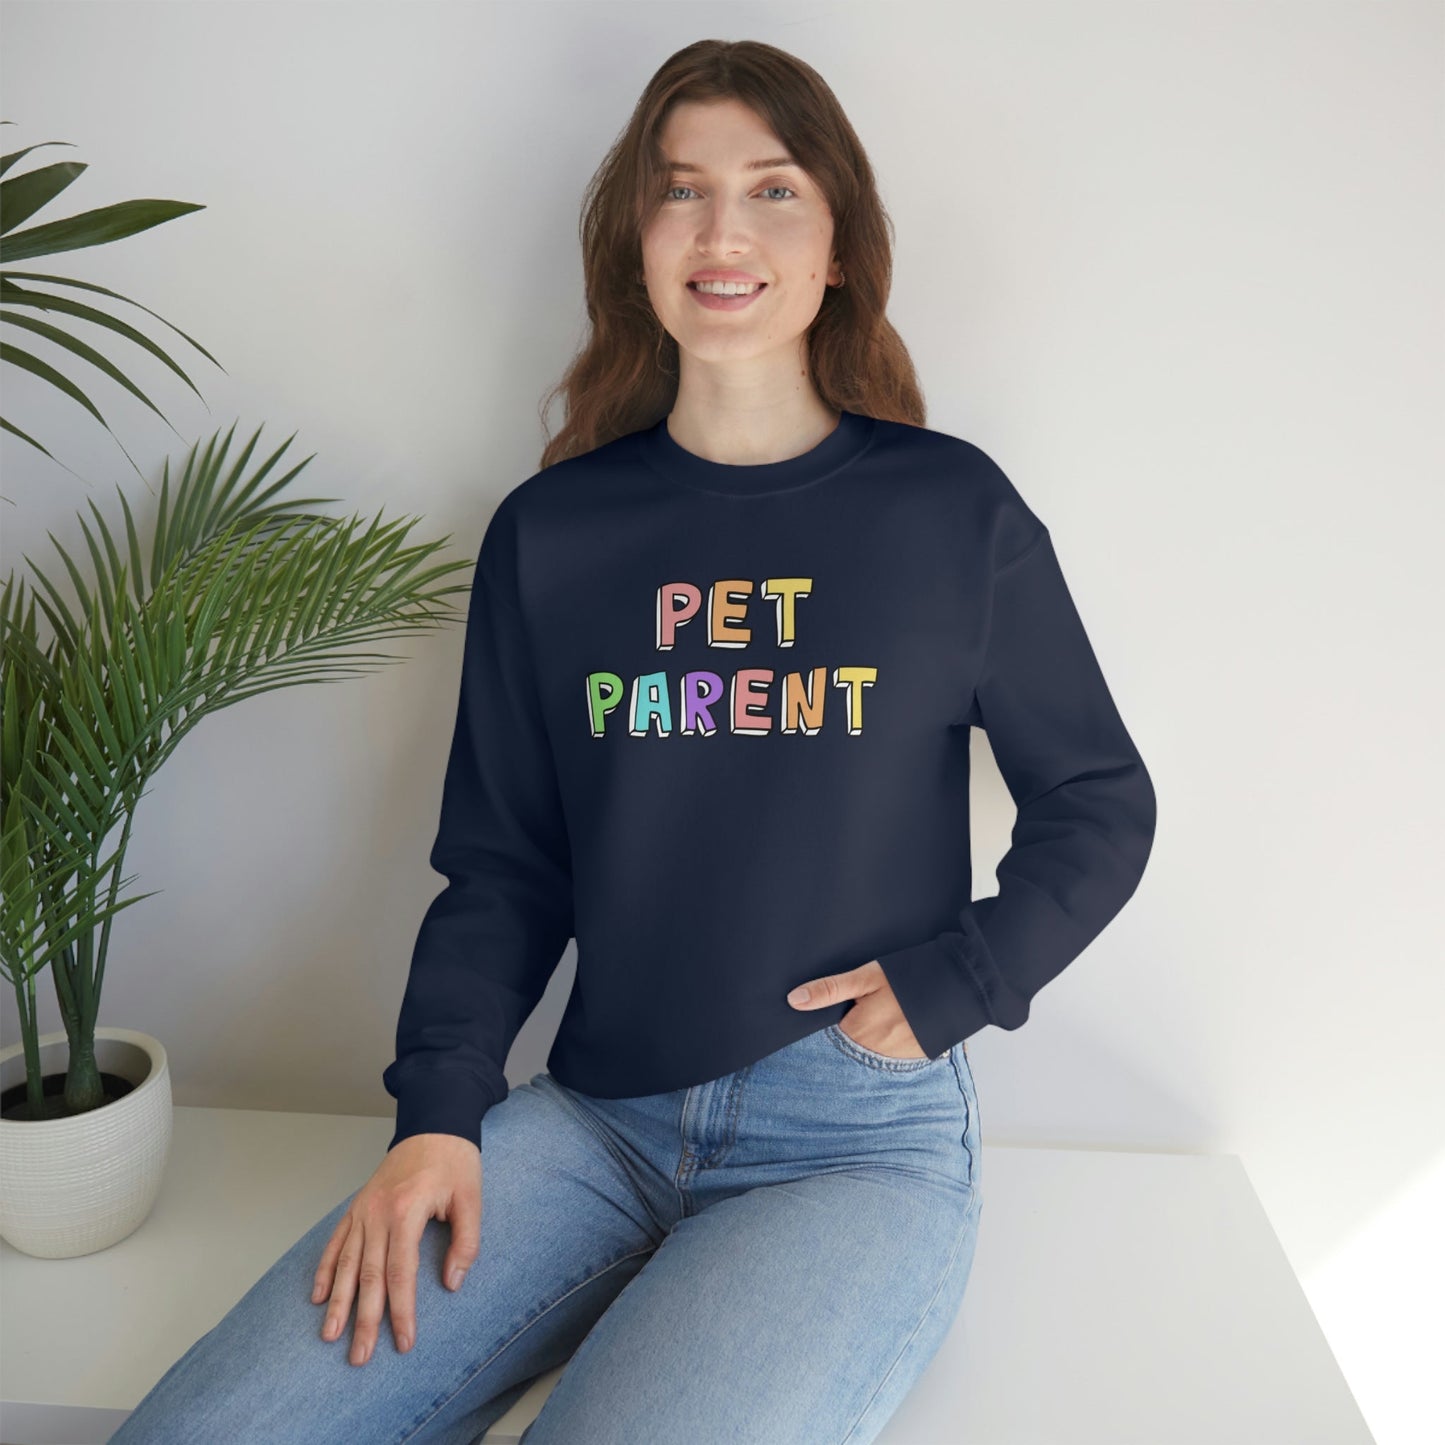 Pet Parent | Crewneck Sweatshirt - Detezi Designs-23407305844181147458